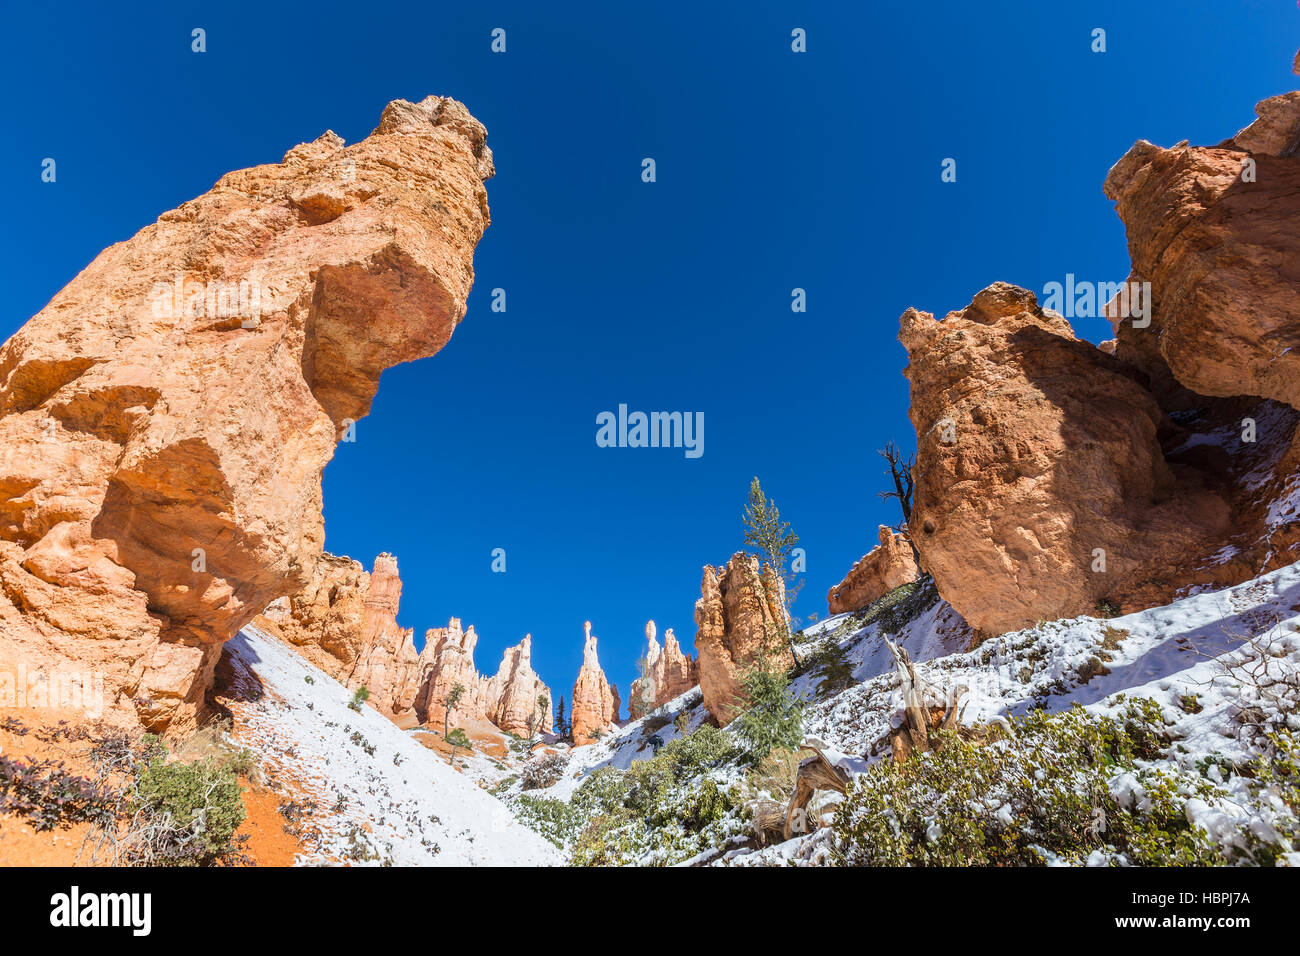 Formations Hoodoo et frosty sol à Bryce Canyon National Park dans le sud de l'Utah. Banque D'Images